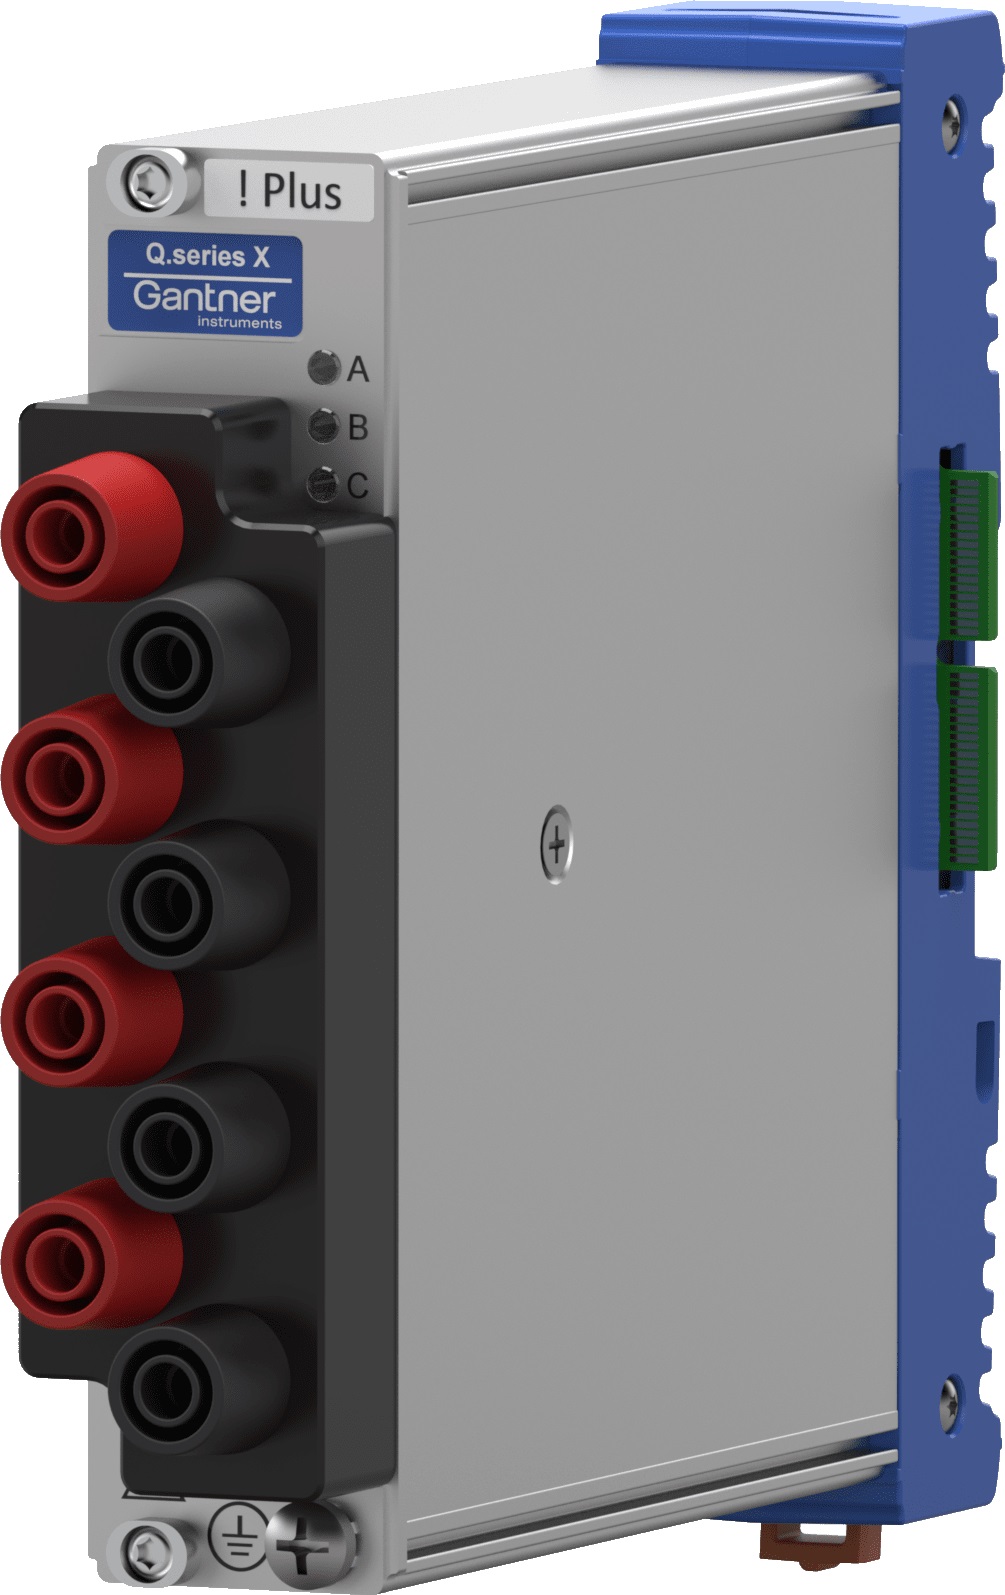 Q.bloxx XL A128-PLUS Datenerfassungsmodul 4-Kanal Analogeingangsmodul für hohe Spannungen